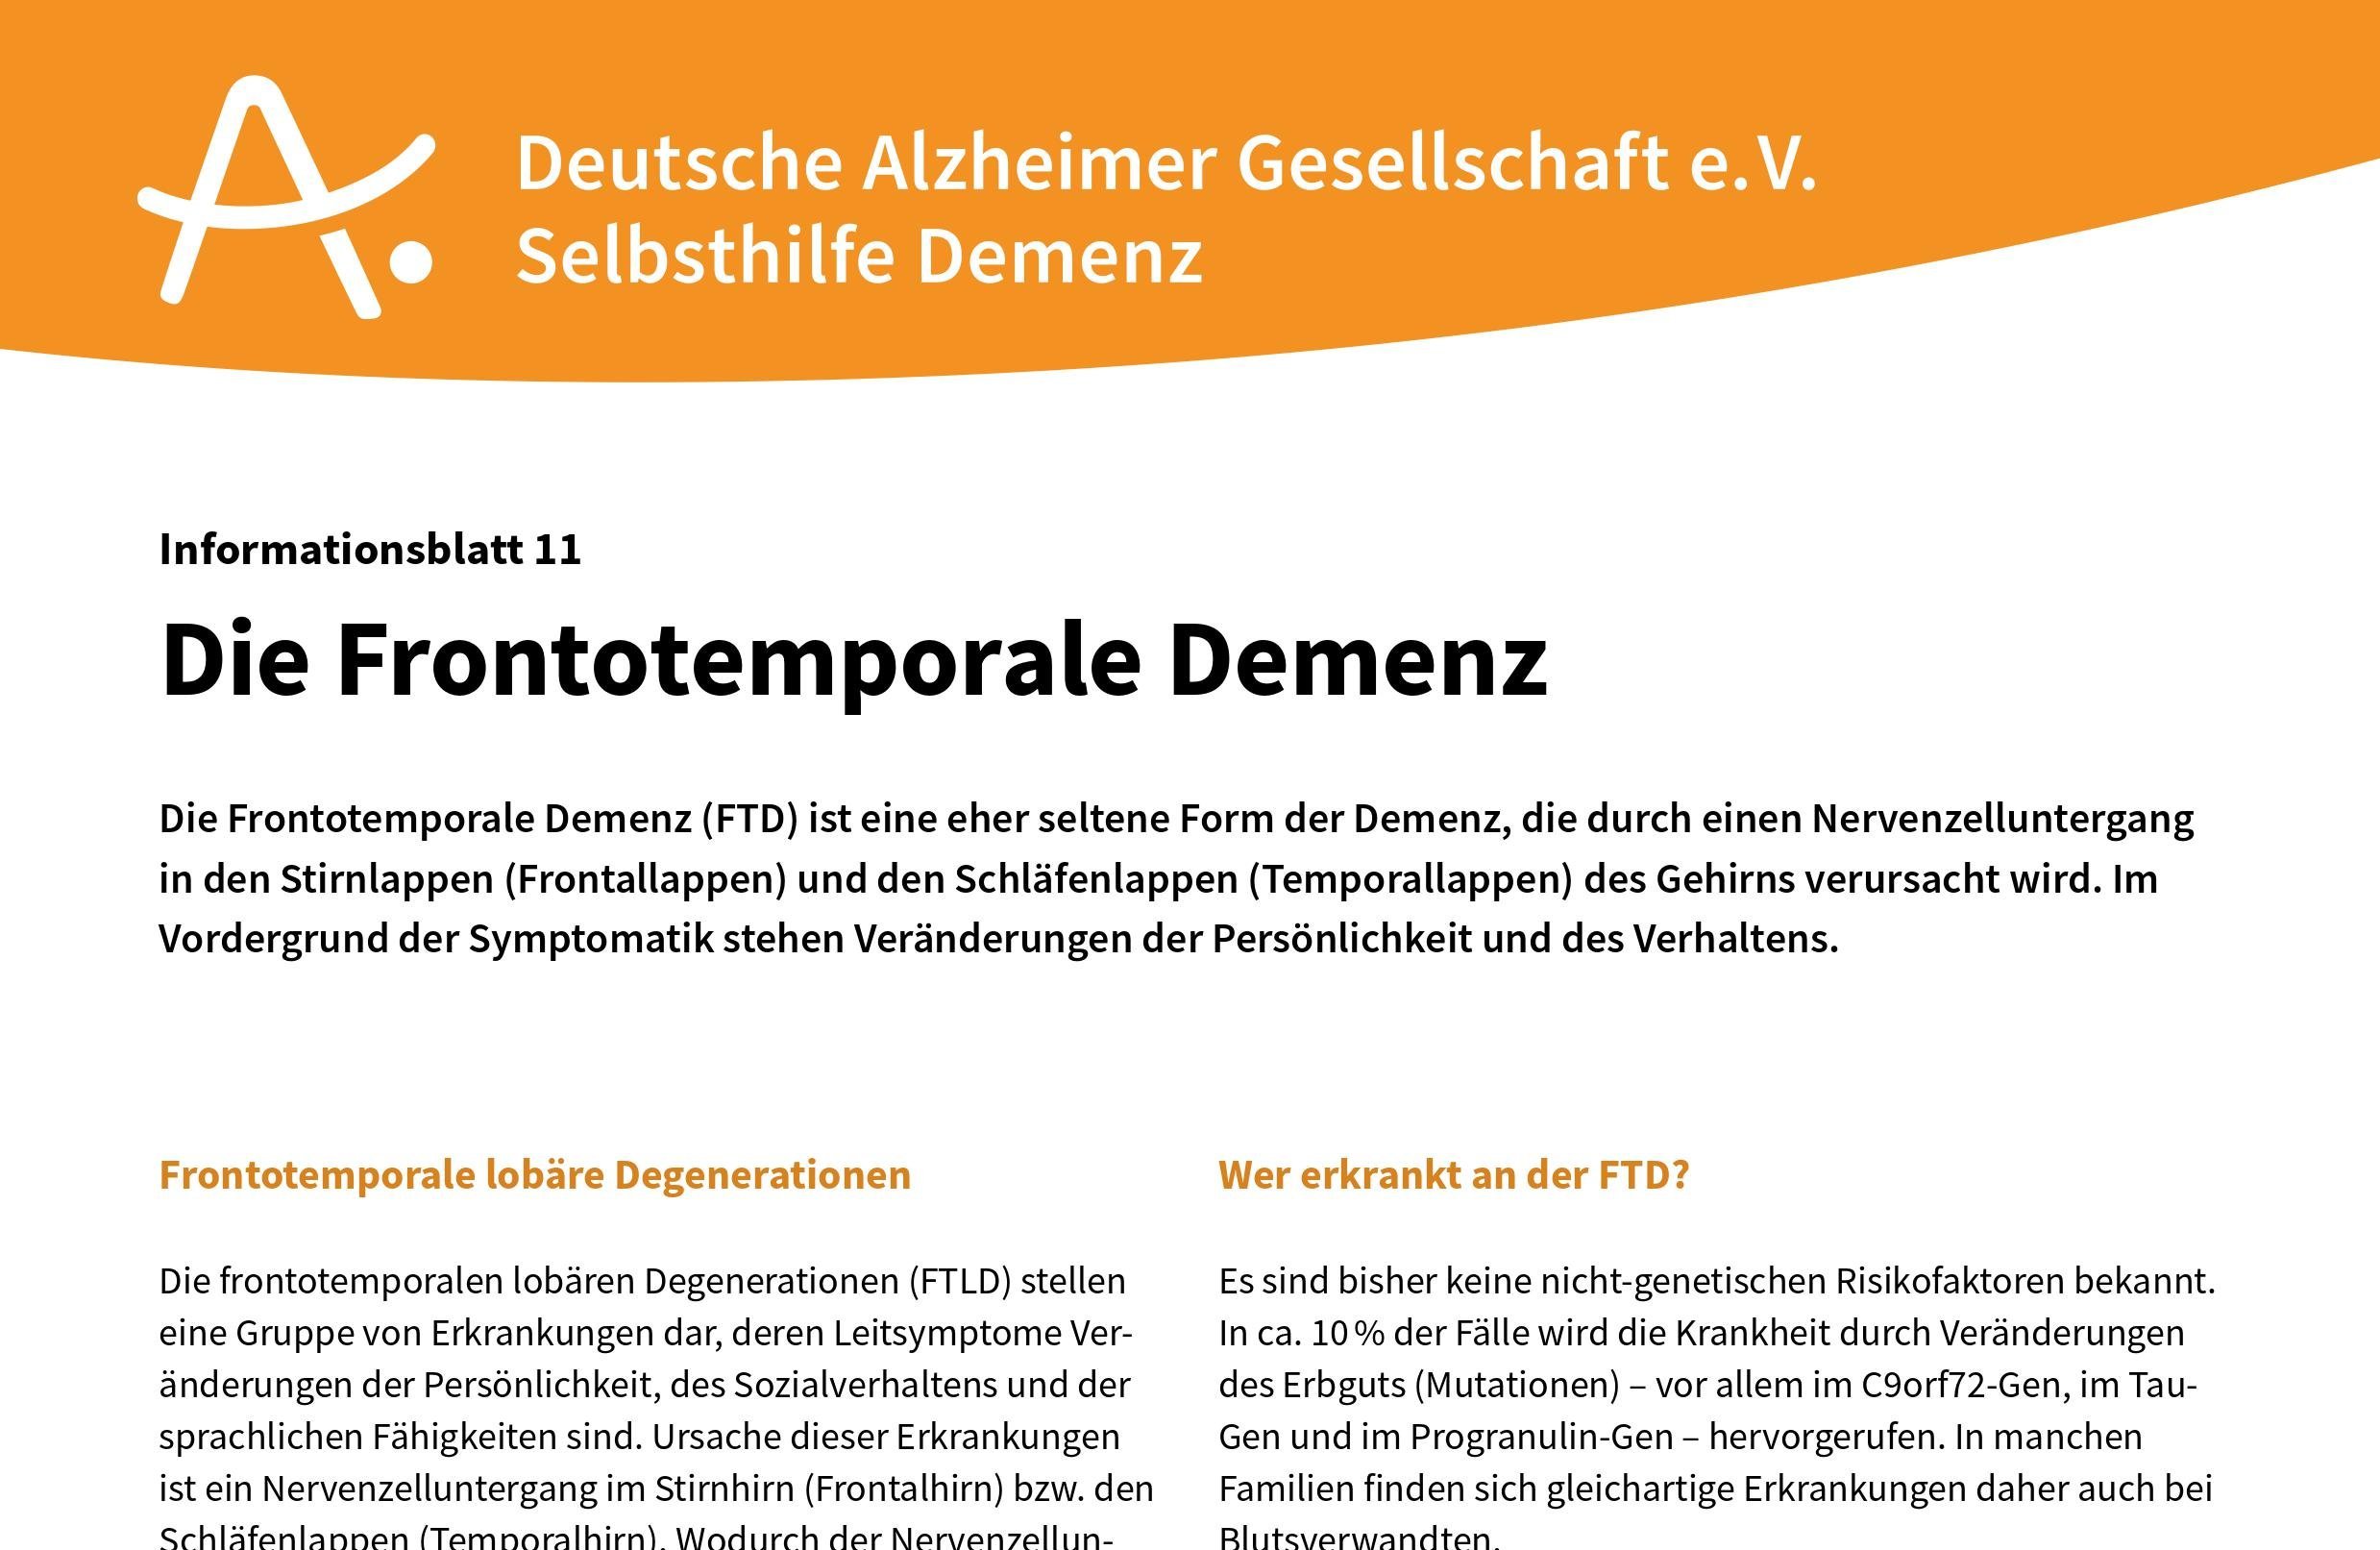 Informationblatt zum Thema Frontotemporale Demenz